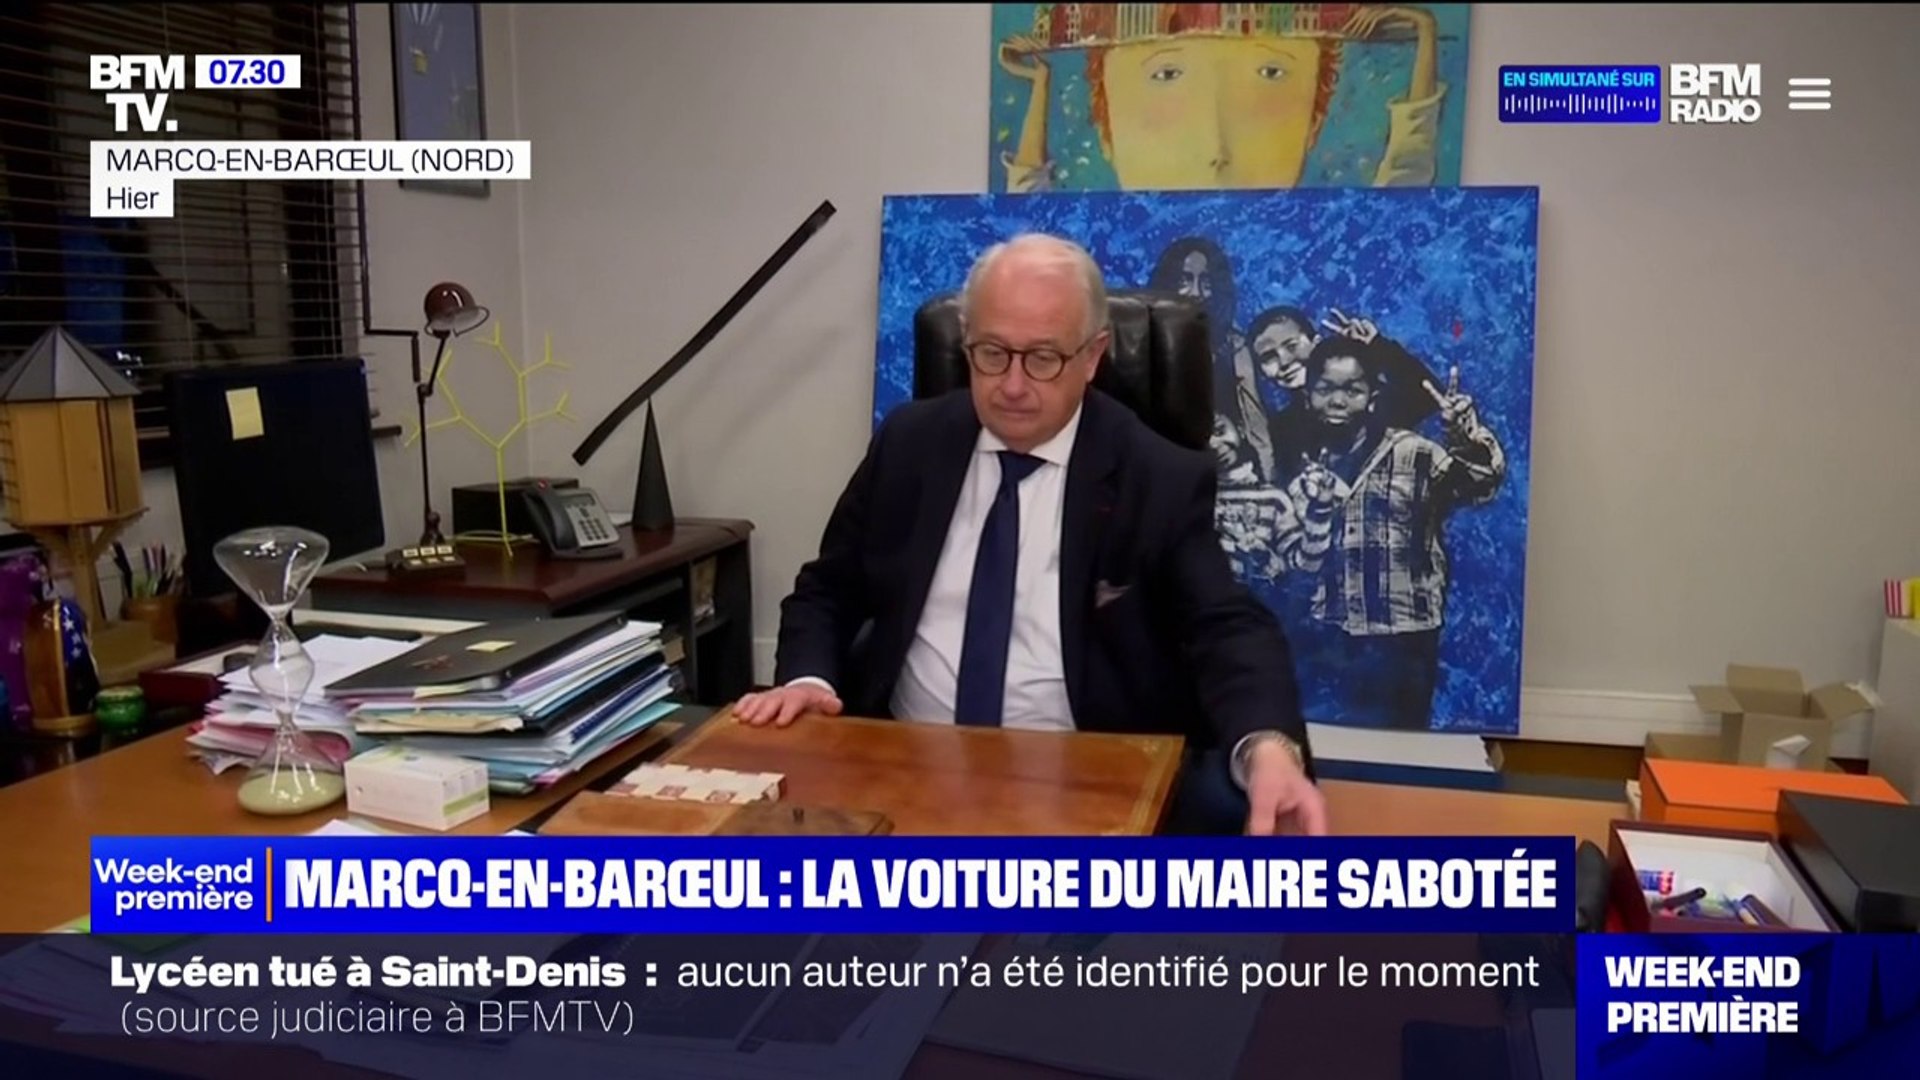 Au retour des vacances de Noël, le maire de Marcq-en-Barœul a retrouvé sa  voiture sabotée - Vidéo Dailymotion